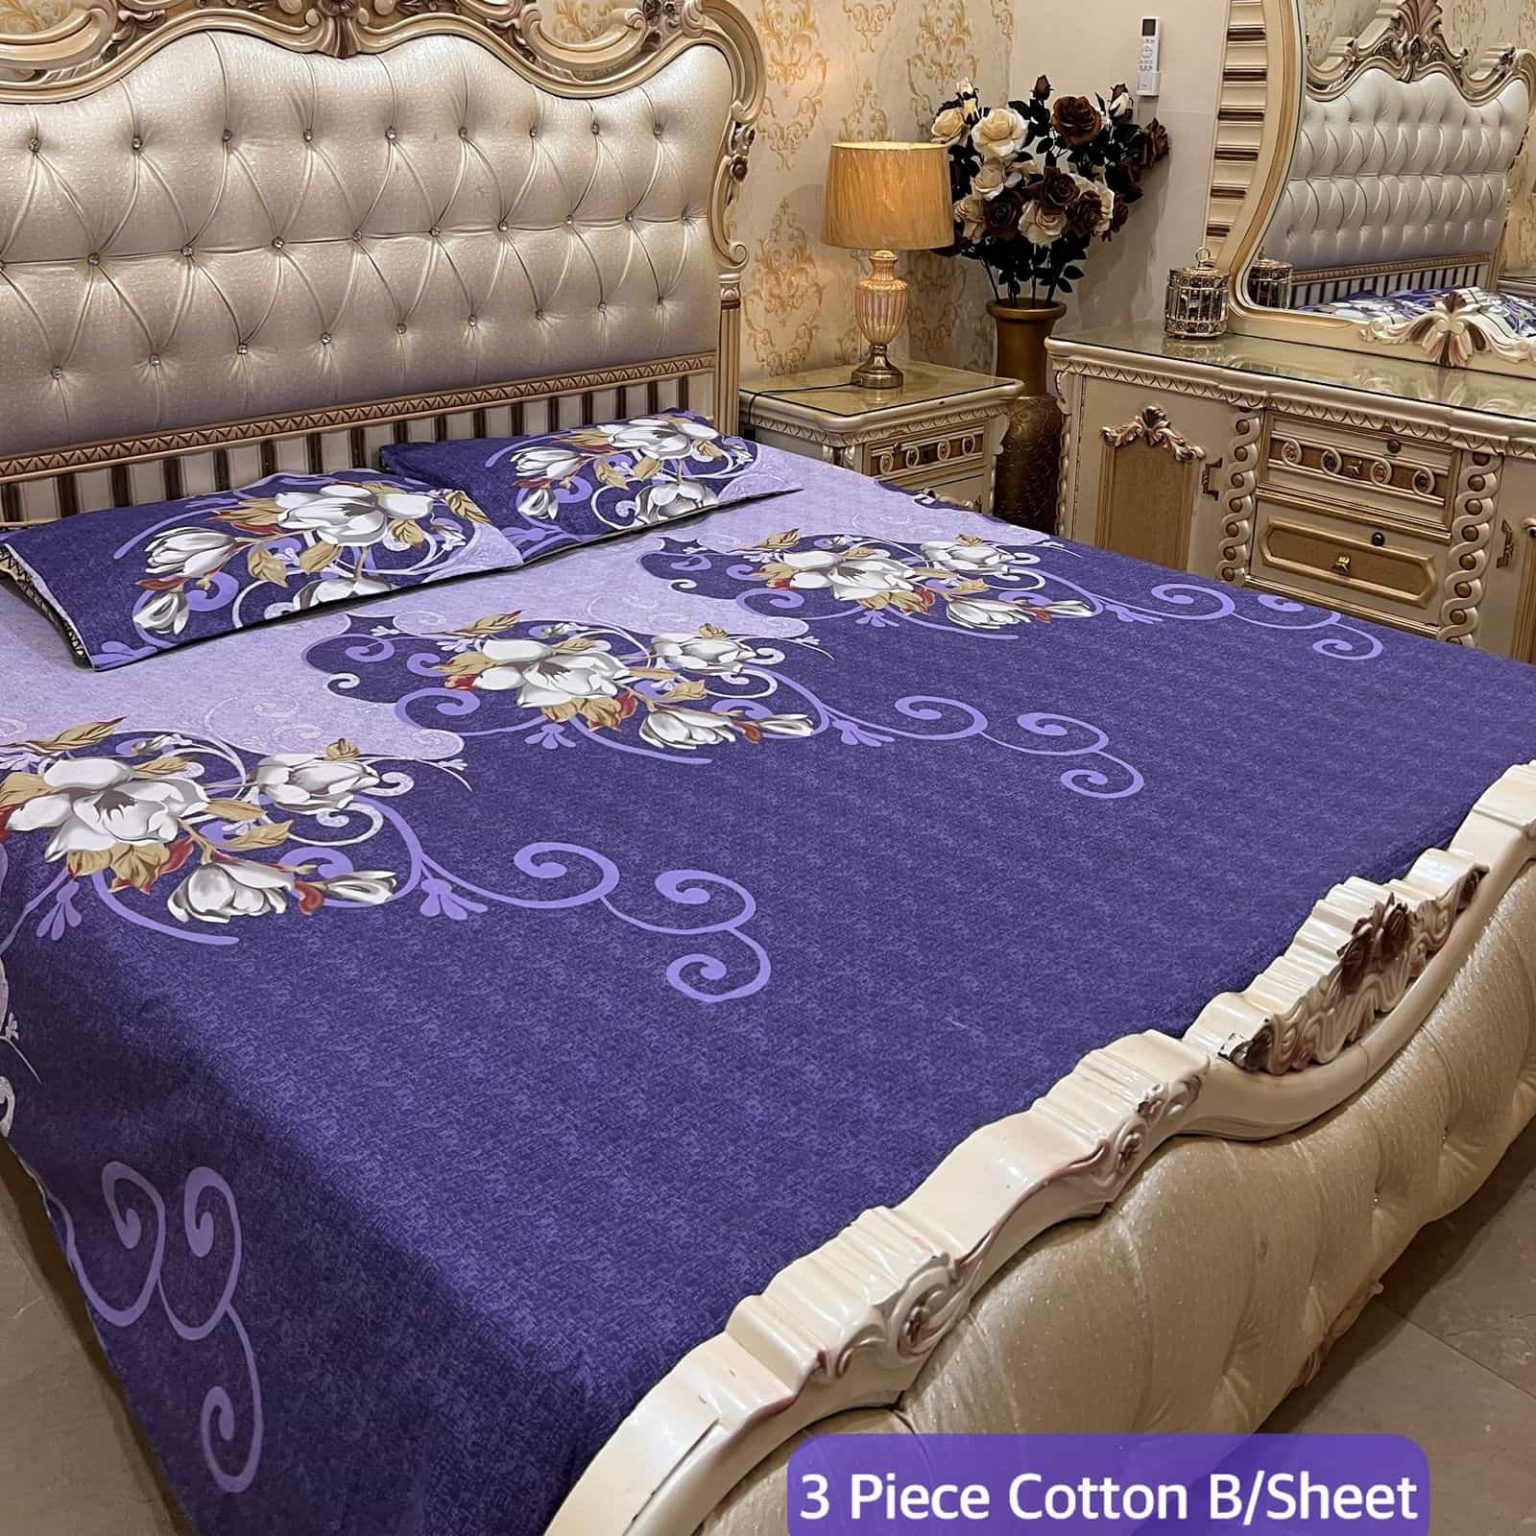 Cotton bedsheets designs